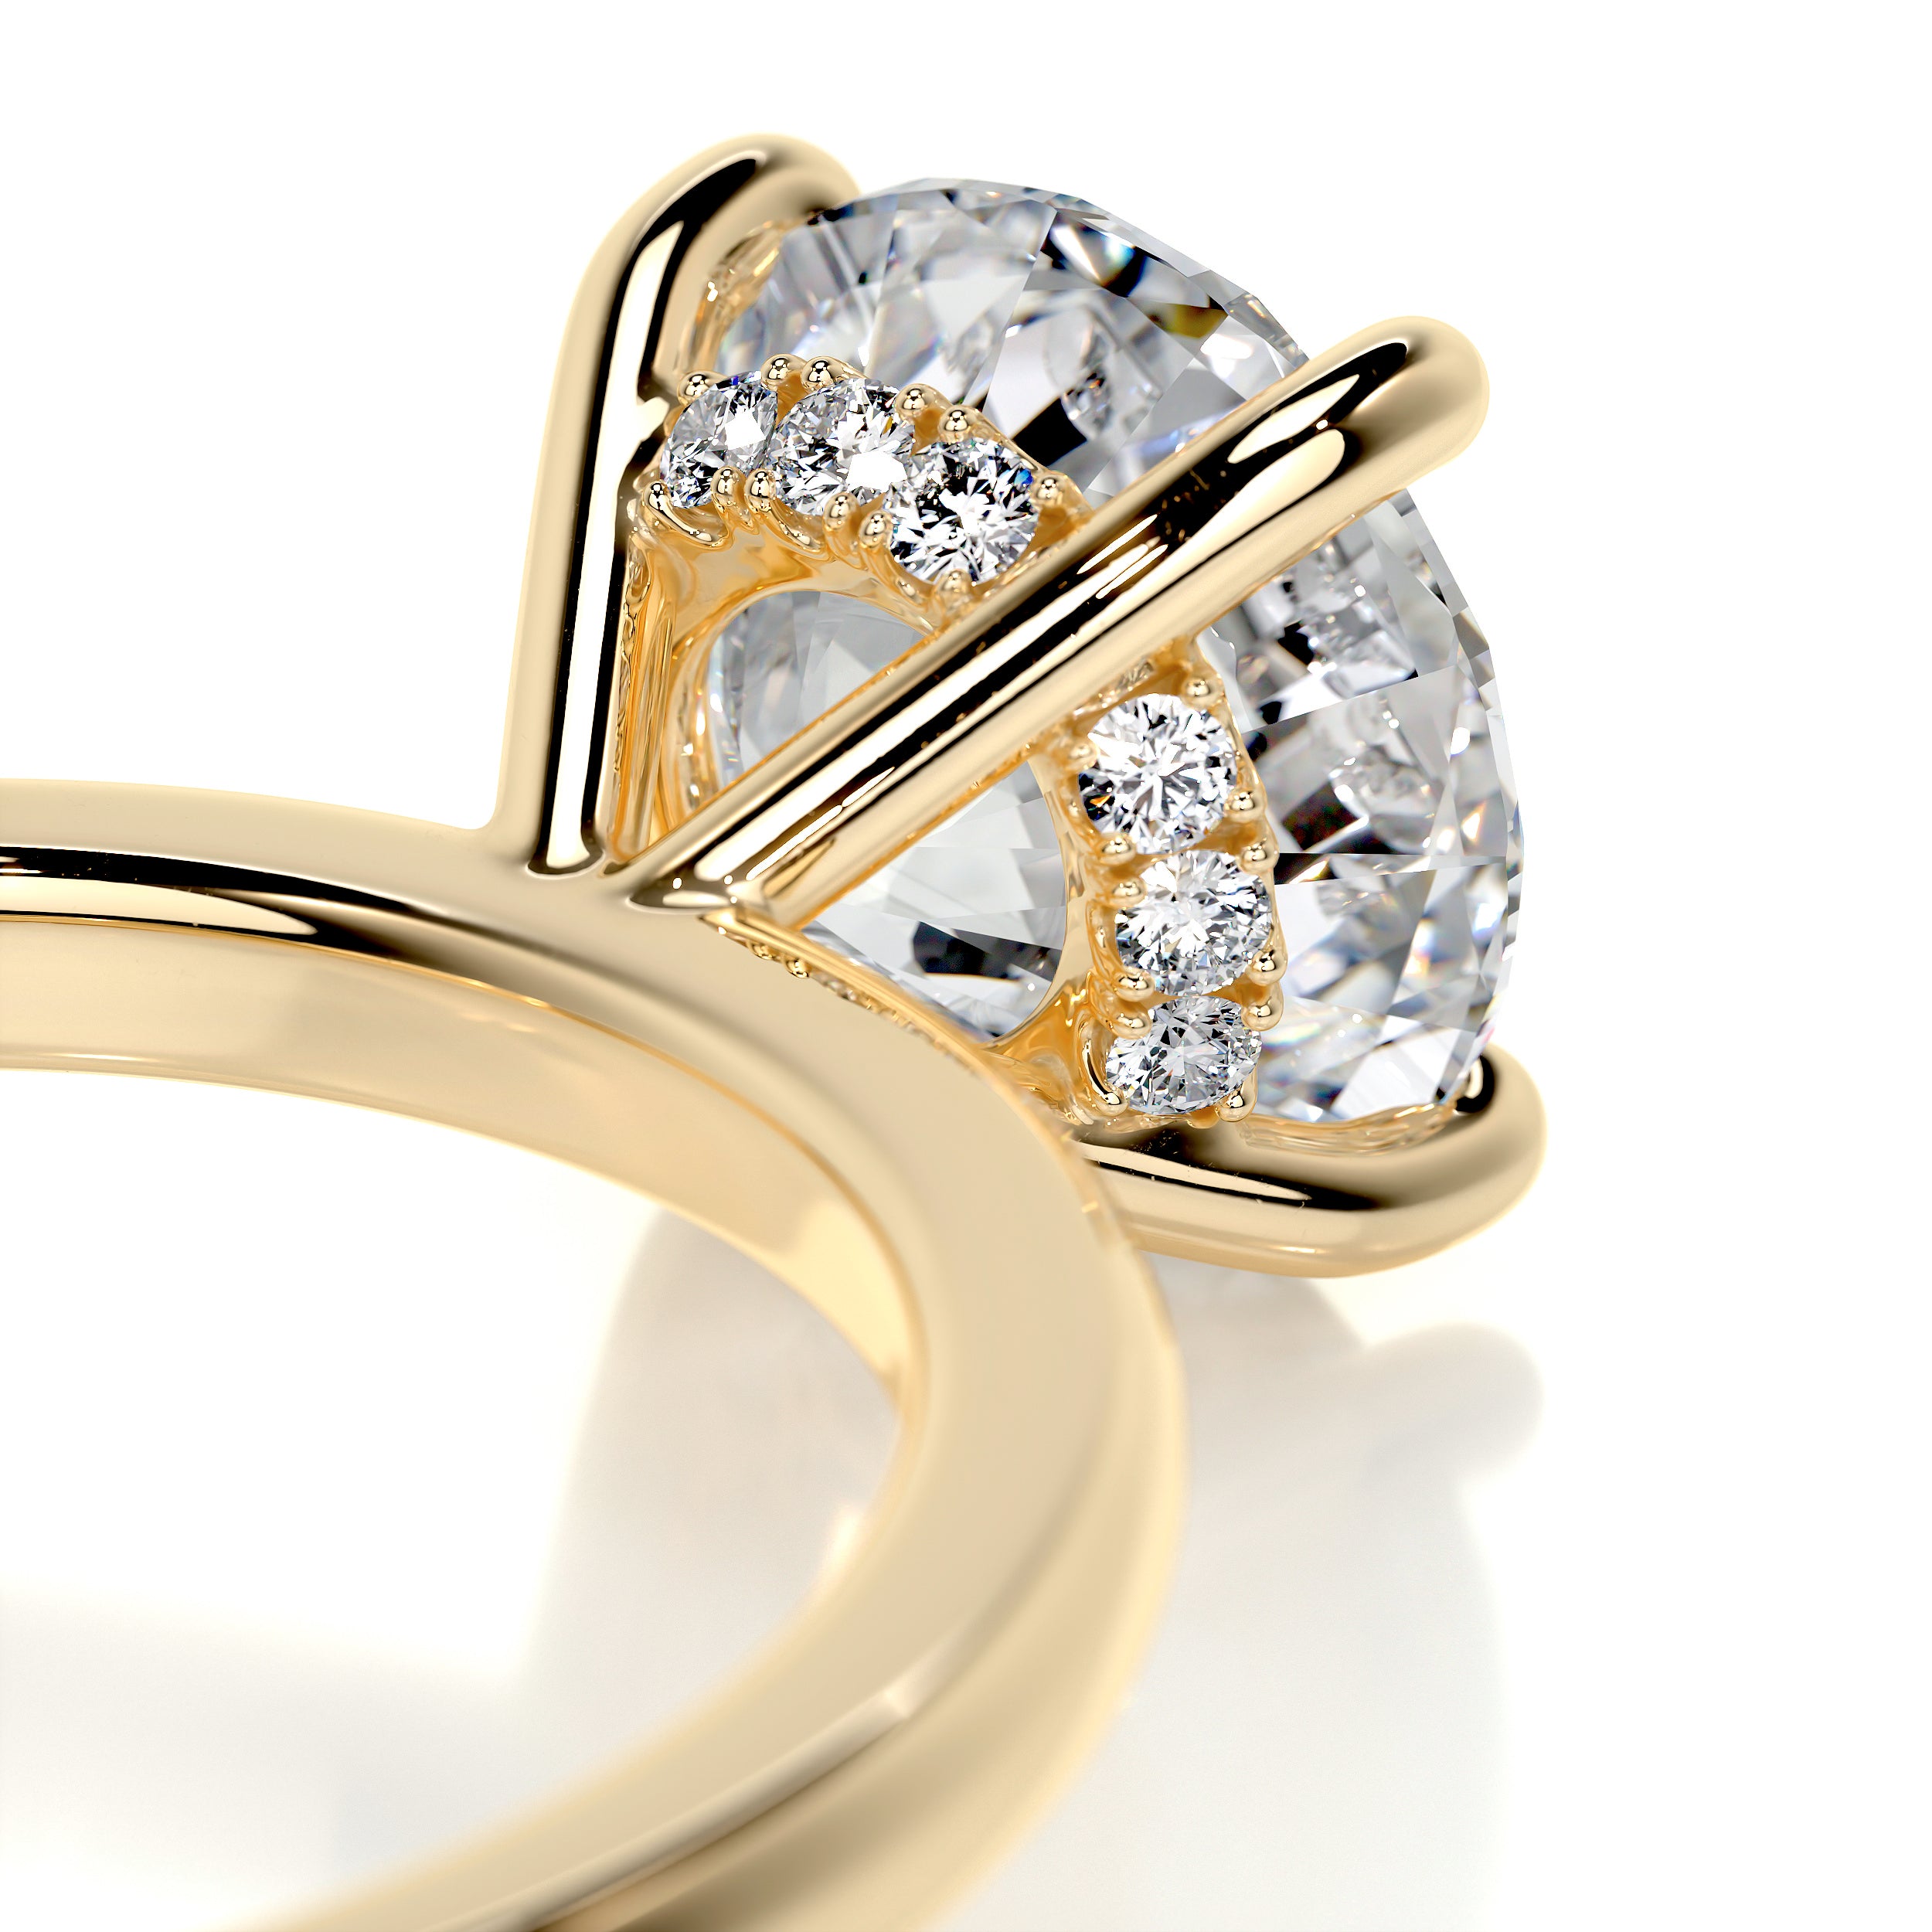 Cynthia Diamond Engagement Ring   (2.1 Carat) -18K Yellow Gold